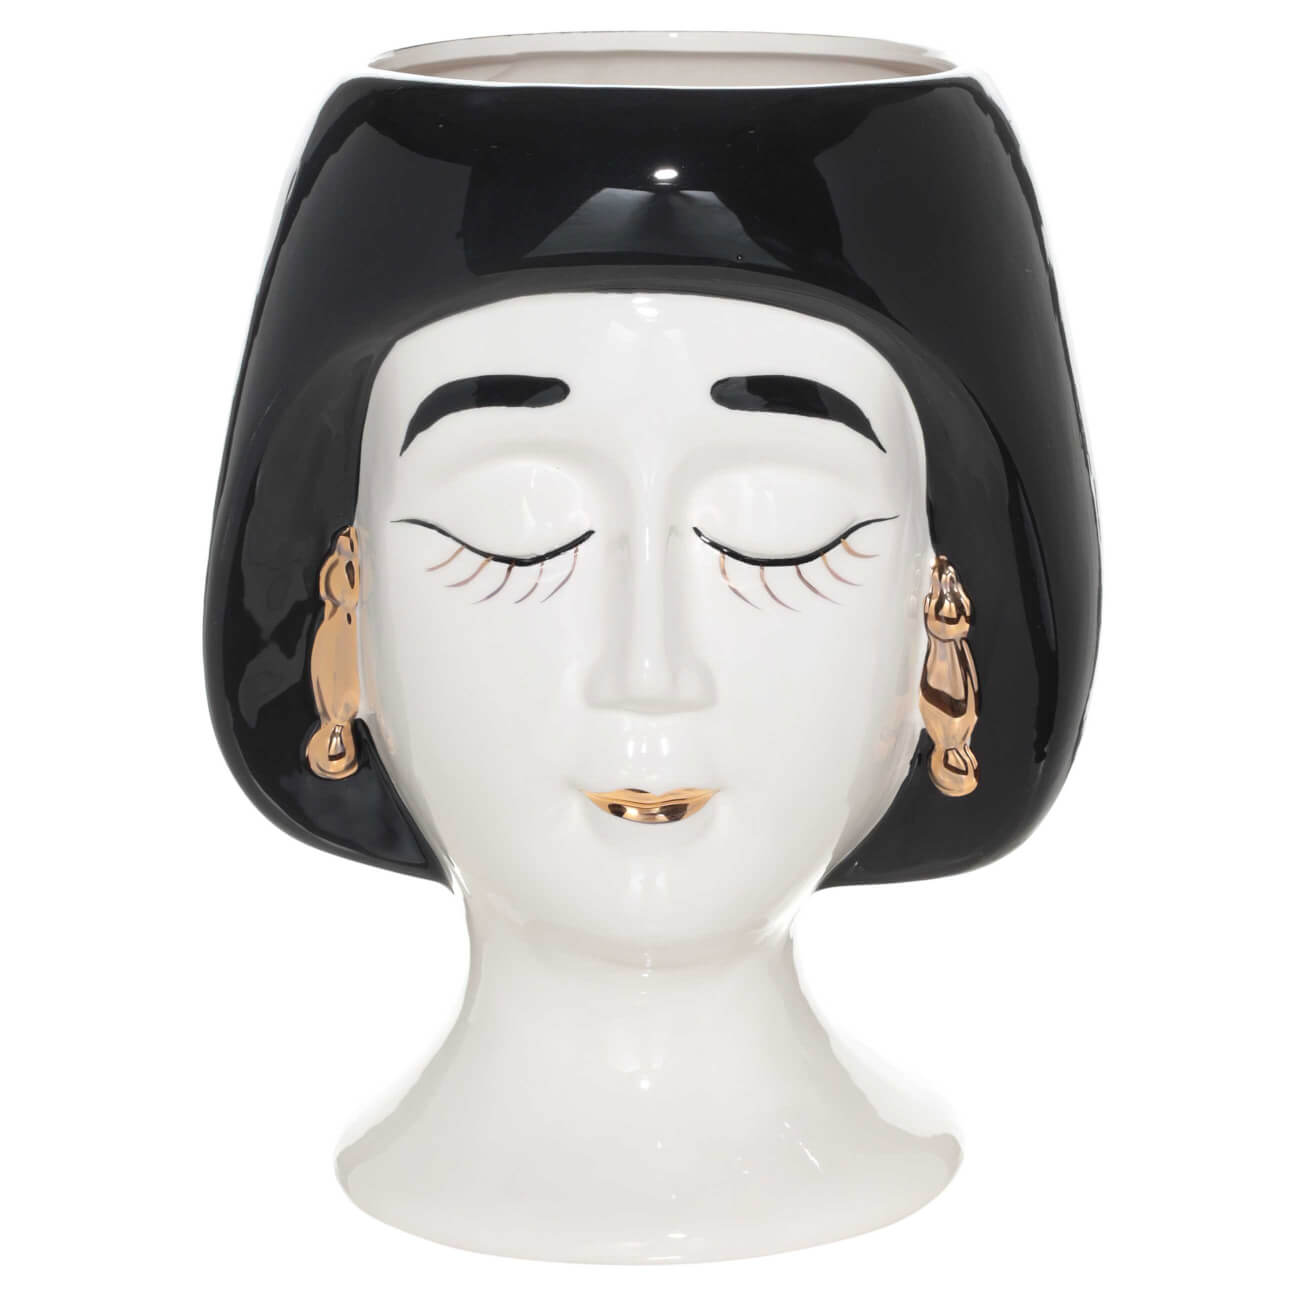 Ваза для цветов, 30 см, декоративная, керамика, бело-черная, Дама в сережках, Girls ваза для цветов 29 см декоративная керамика черная графичное лицо face